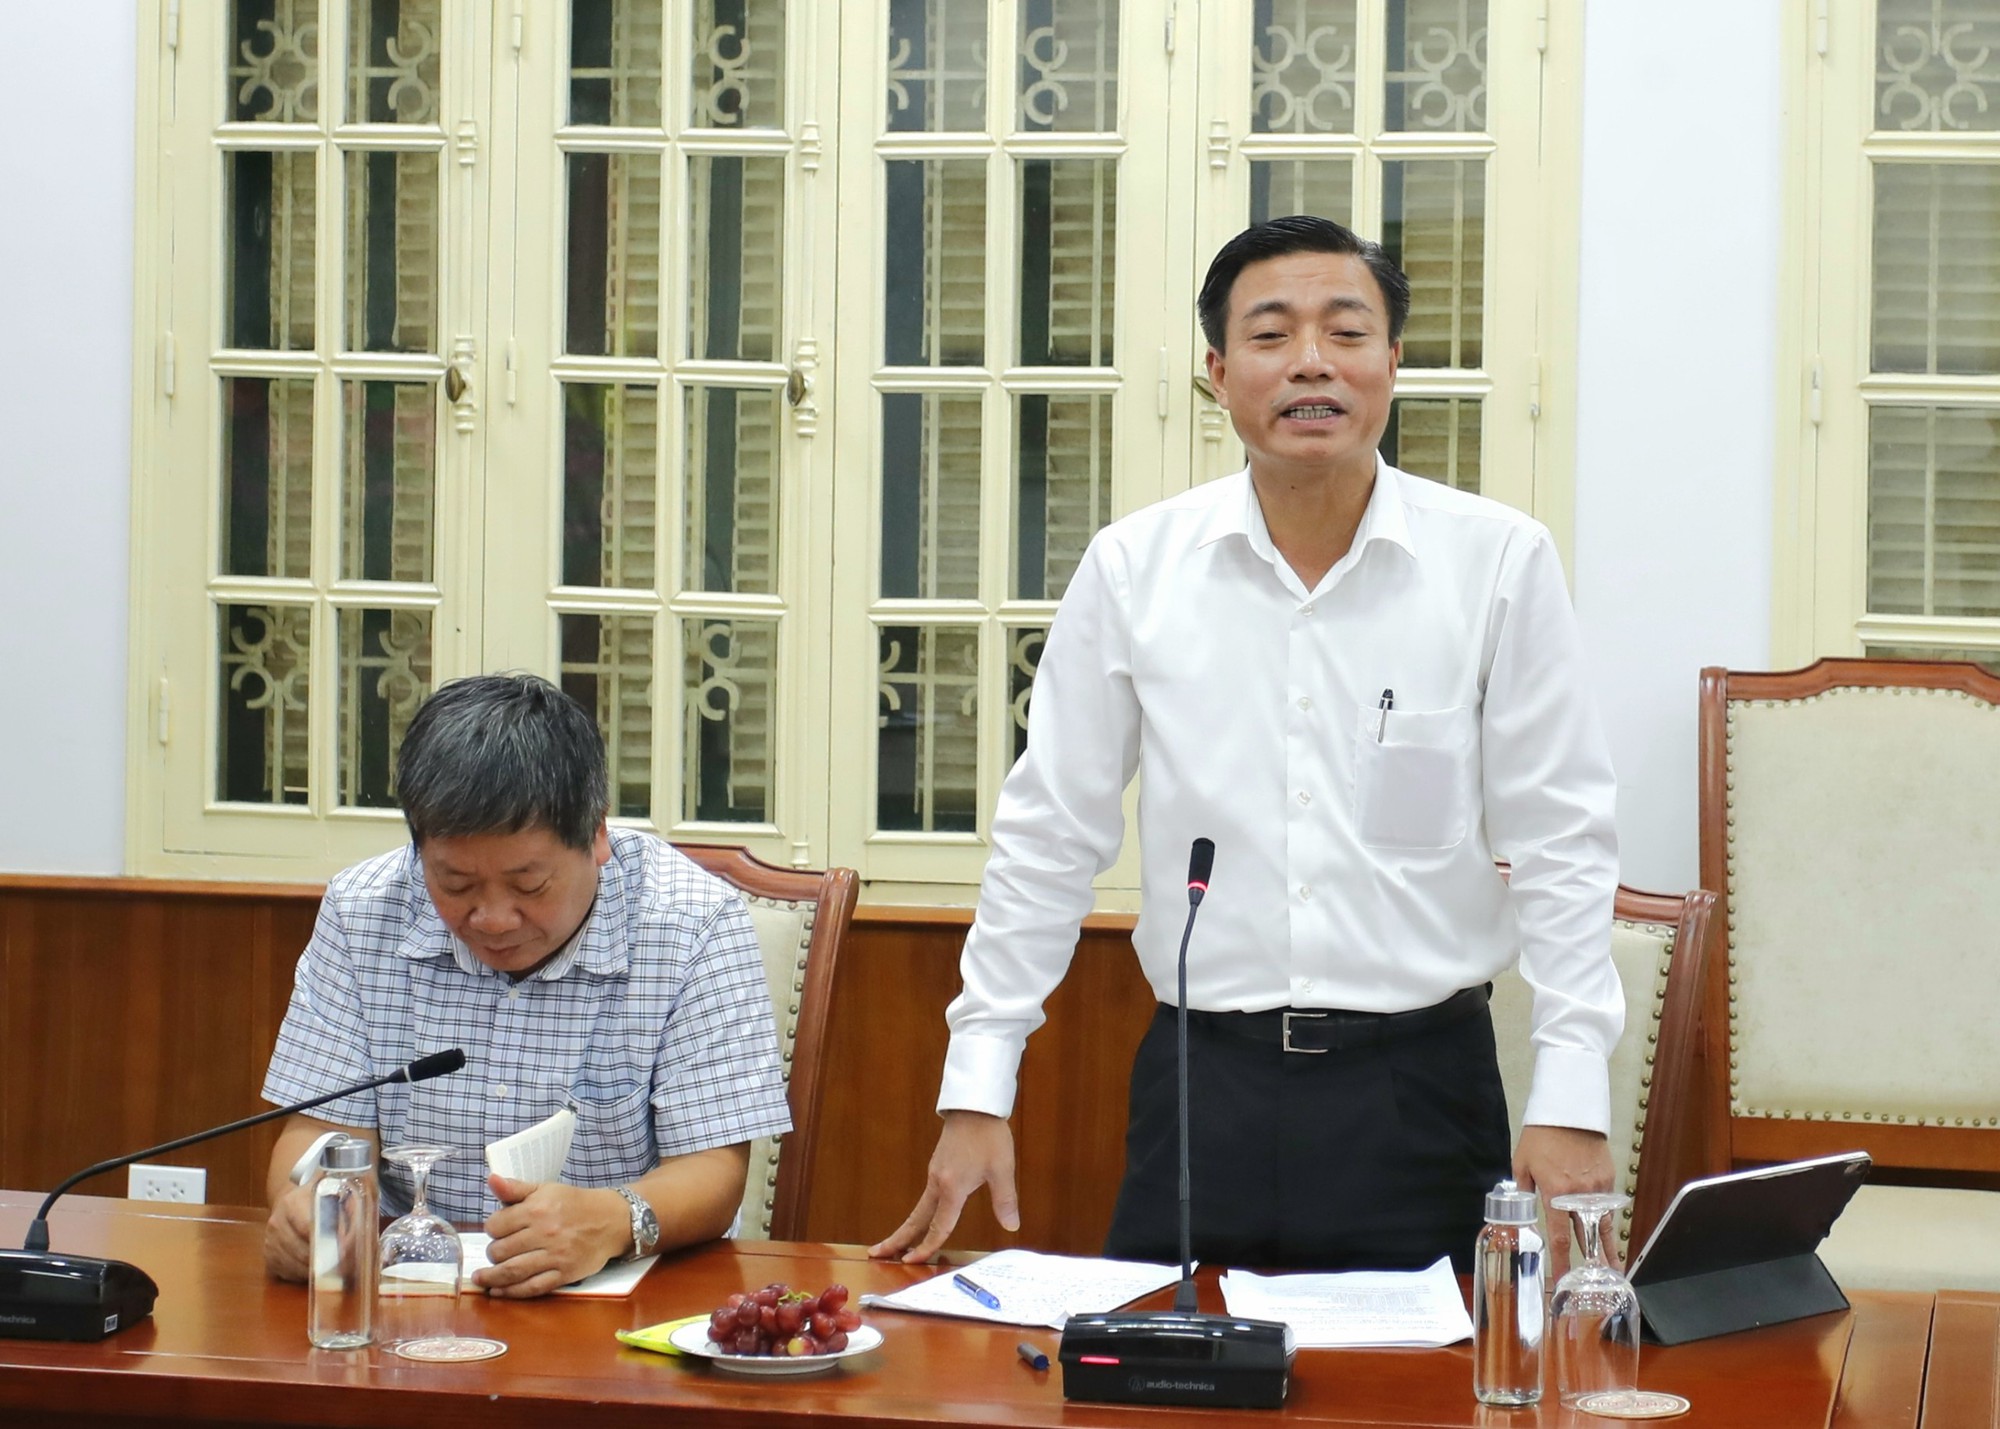 Bộ trưởng Nguyễn Văn Hùng: Doanh nghiệp thuộc Bộ VHTTDL phải có tầm nhìn, tư duy mới để kiến tạo và phát triển - Ảnh 3.